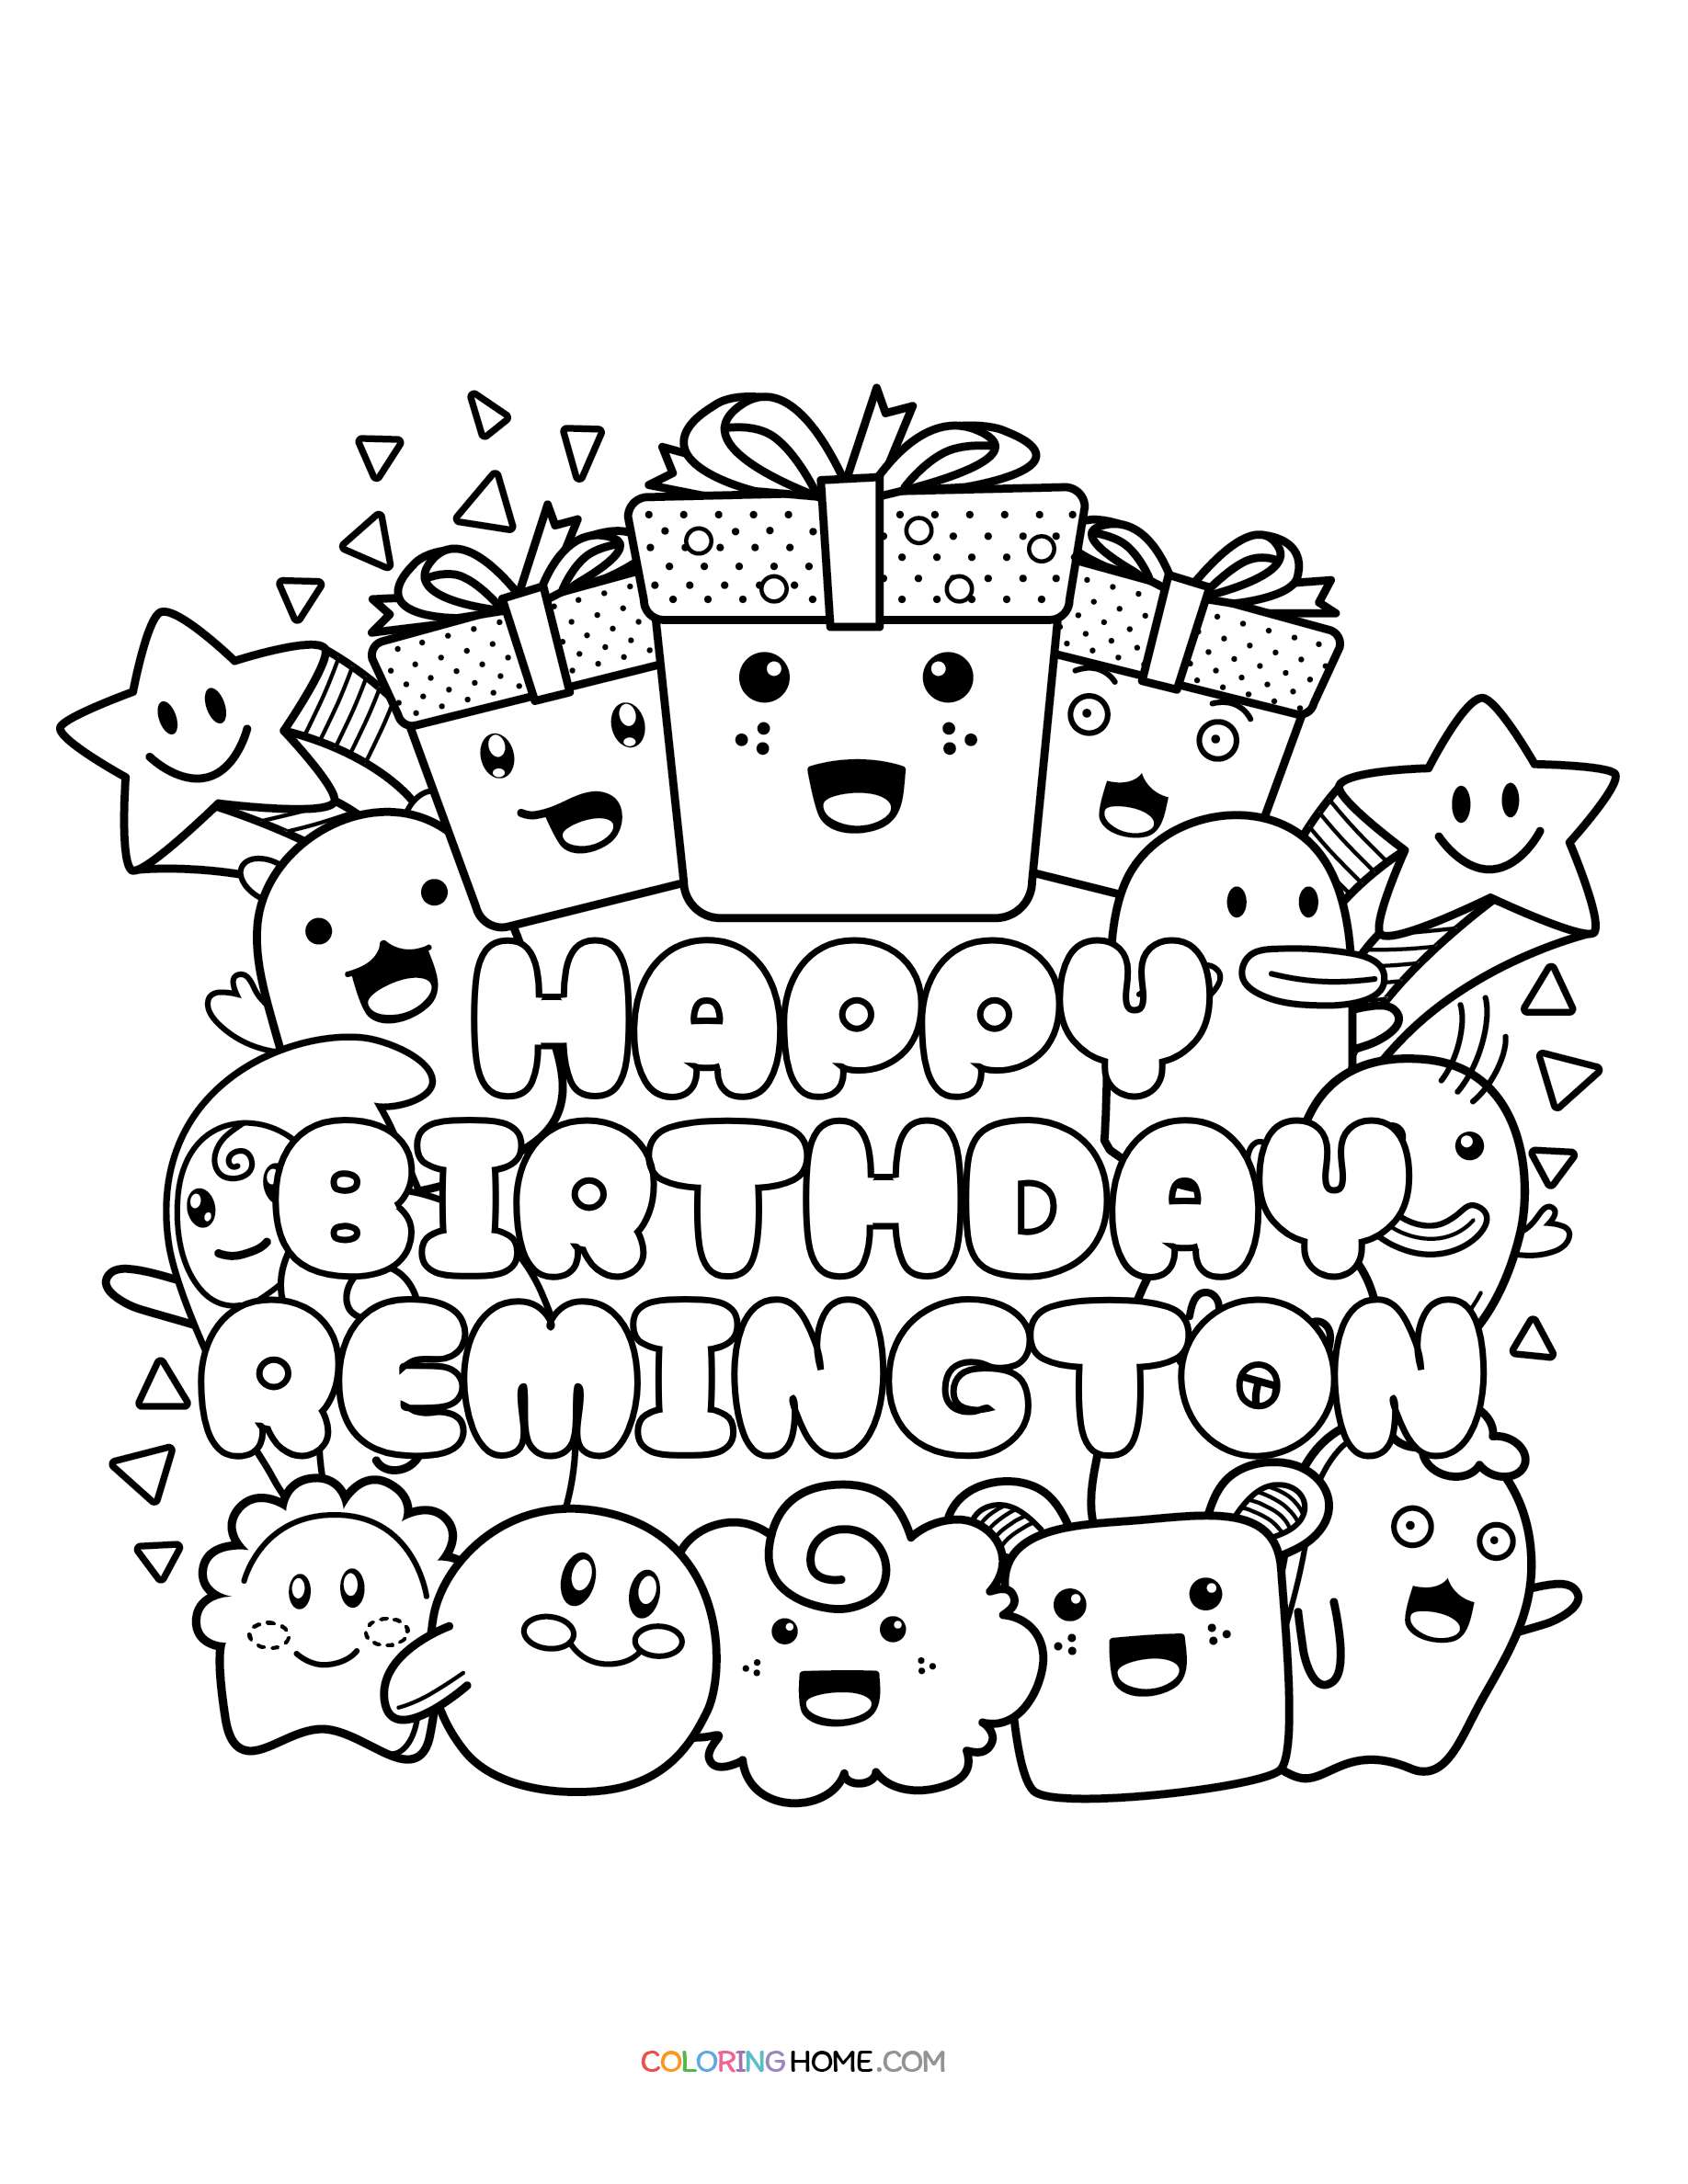 Happy Birthday Remington coloring page